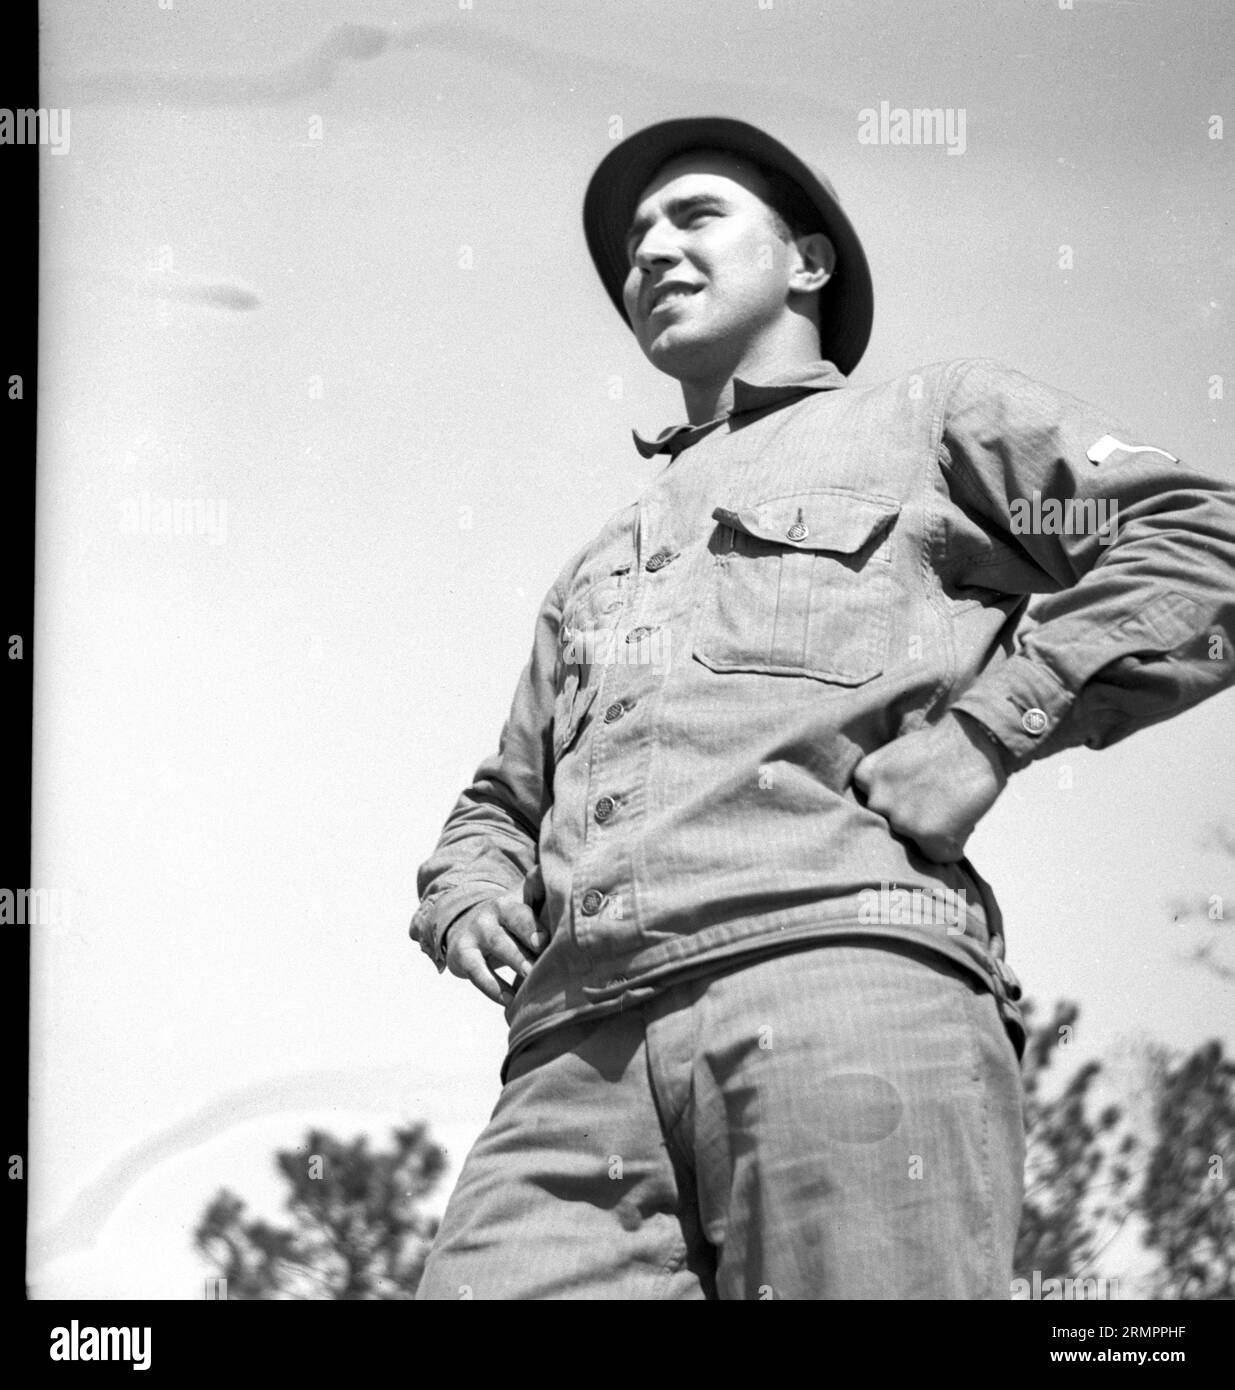 United States GI in Uniform. Mitglieder der 114. Infanteriedivision der US-Armee trainieren im Zweiten Weltkrieg gegen Deutschland in Europa. Stockfoto